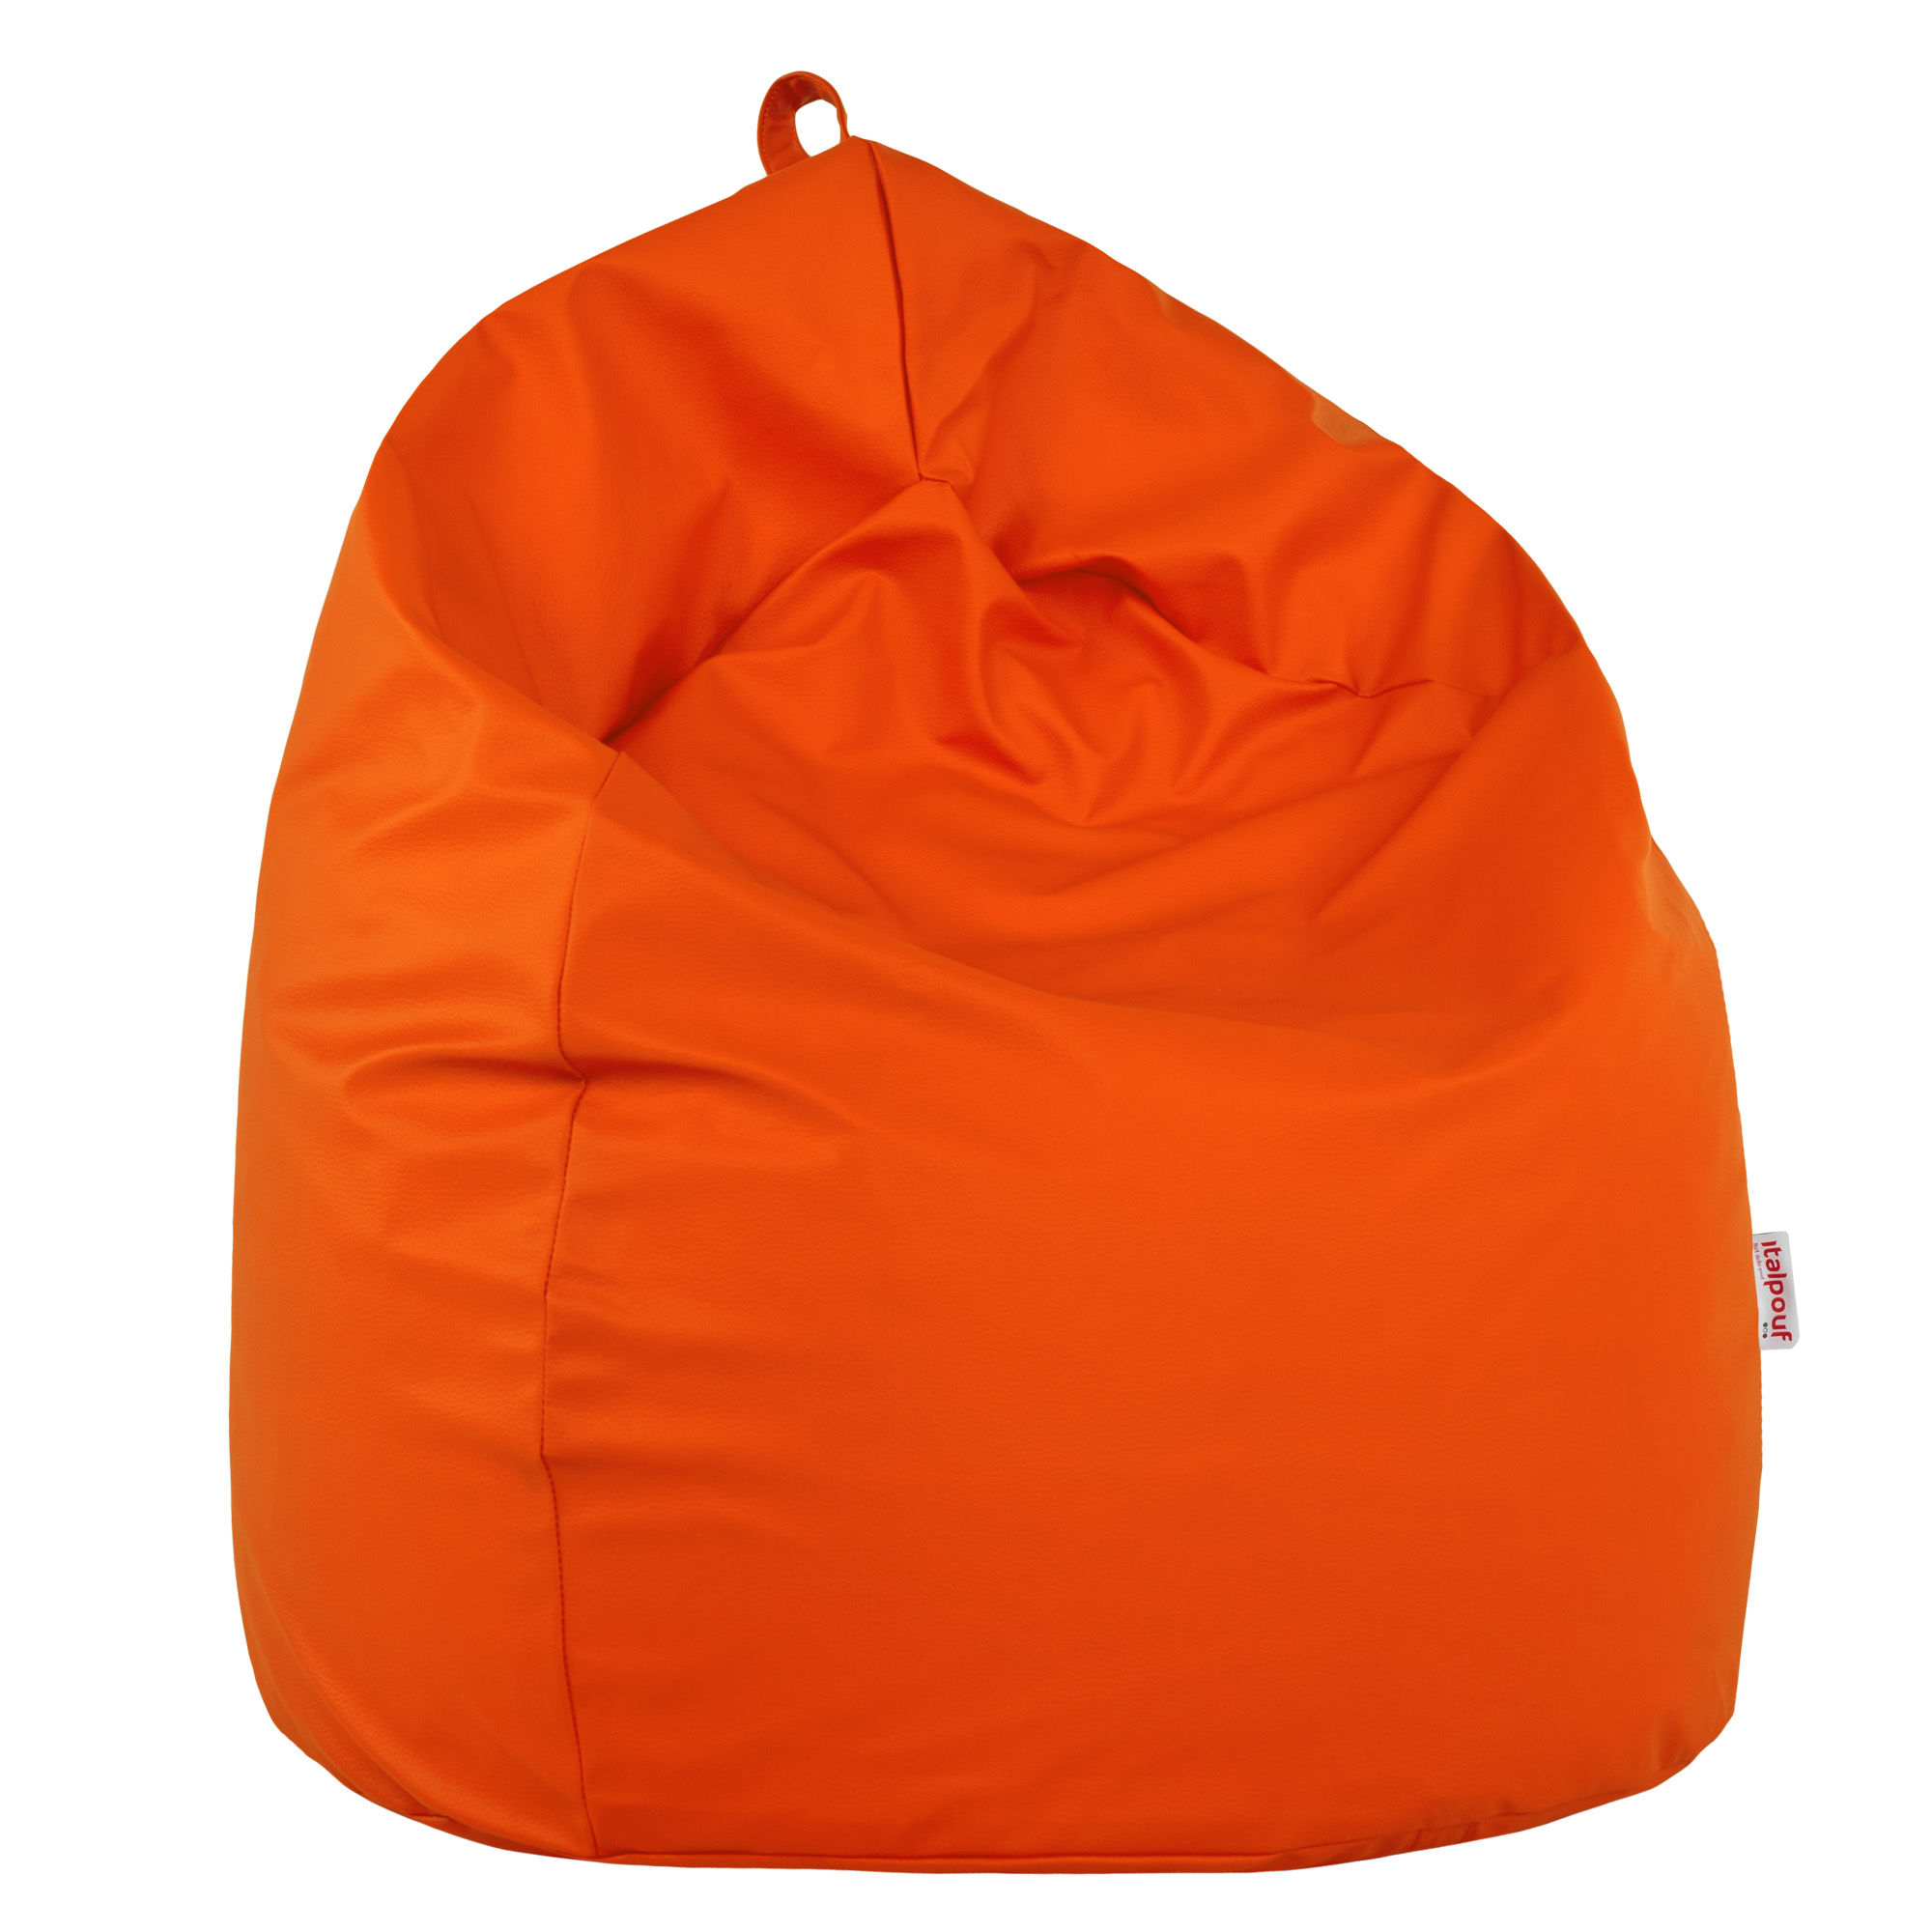 Pouf sacco per bambini arancione da camera di bambini. Pouf a pera